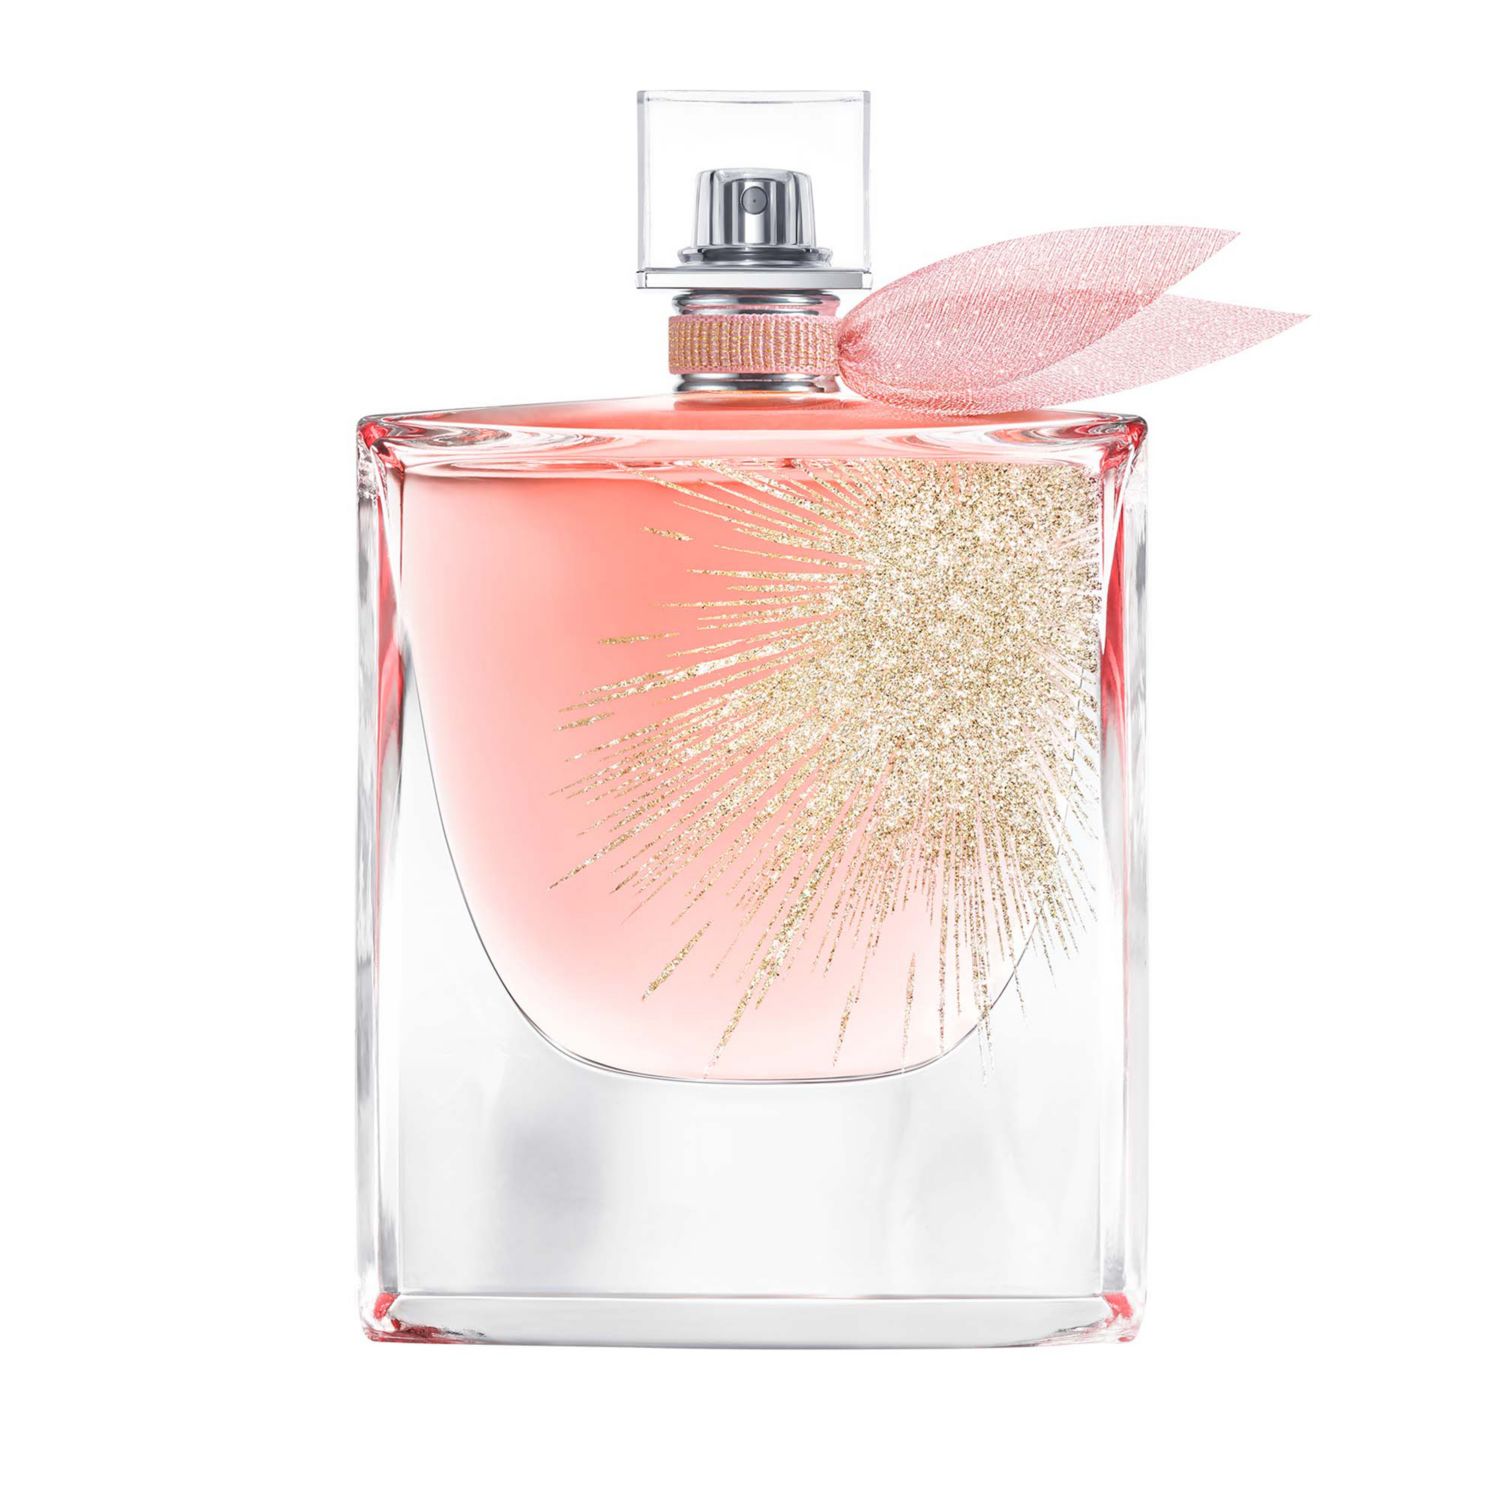 Lancome Oui La Vie est Belle Eau de Parfum - Lveb (3.4 FL OZ)